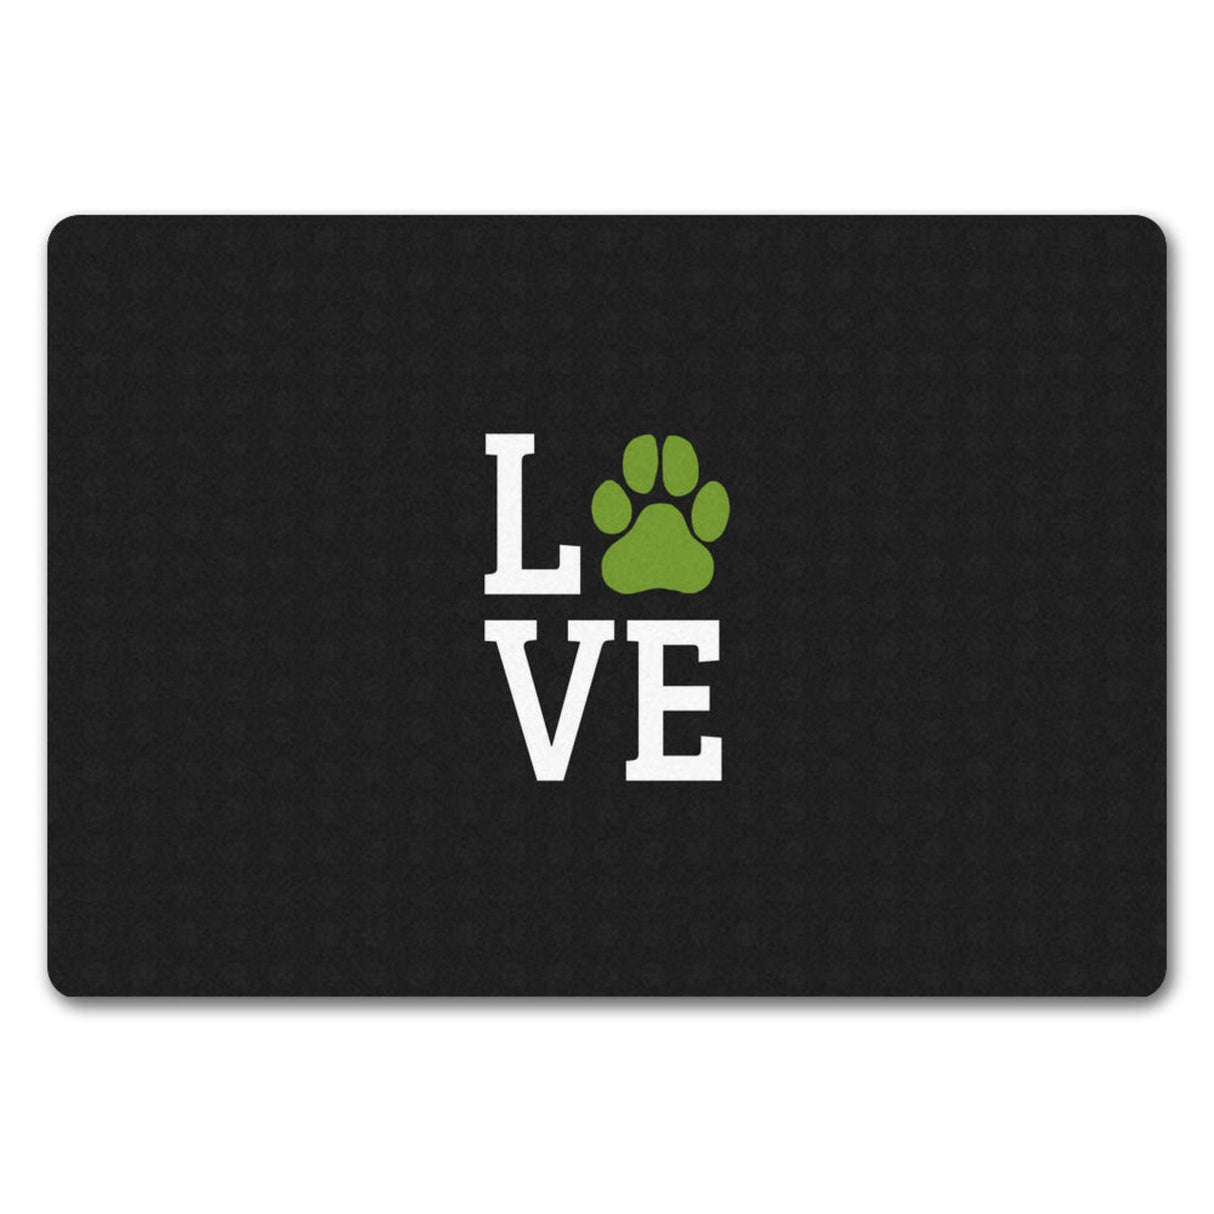 Love Fußmatte mit Pfote Motiv - Hund Hunde Familie wohnen Wohnung Liebe